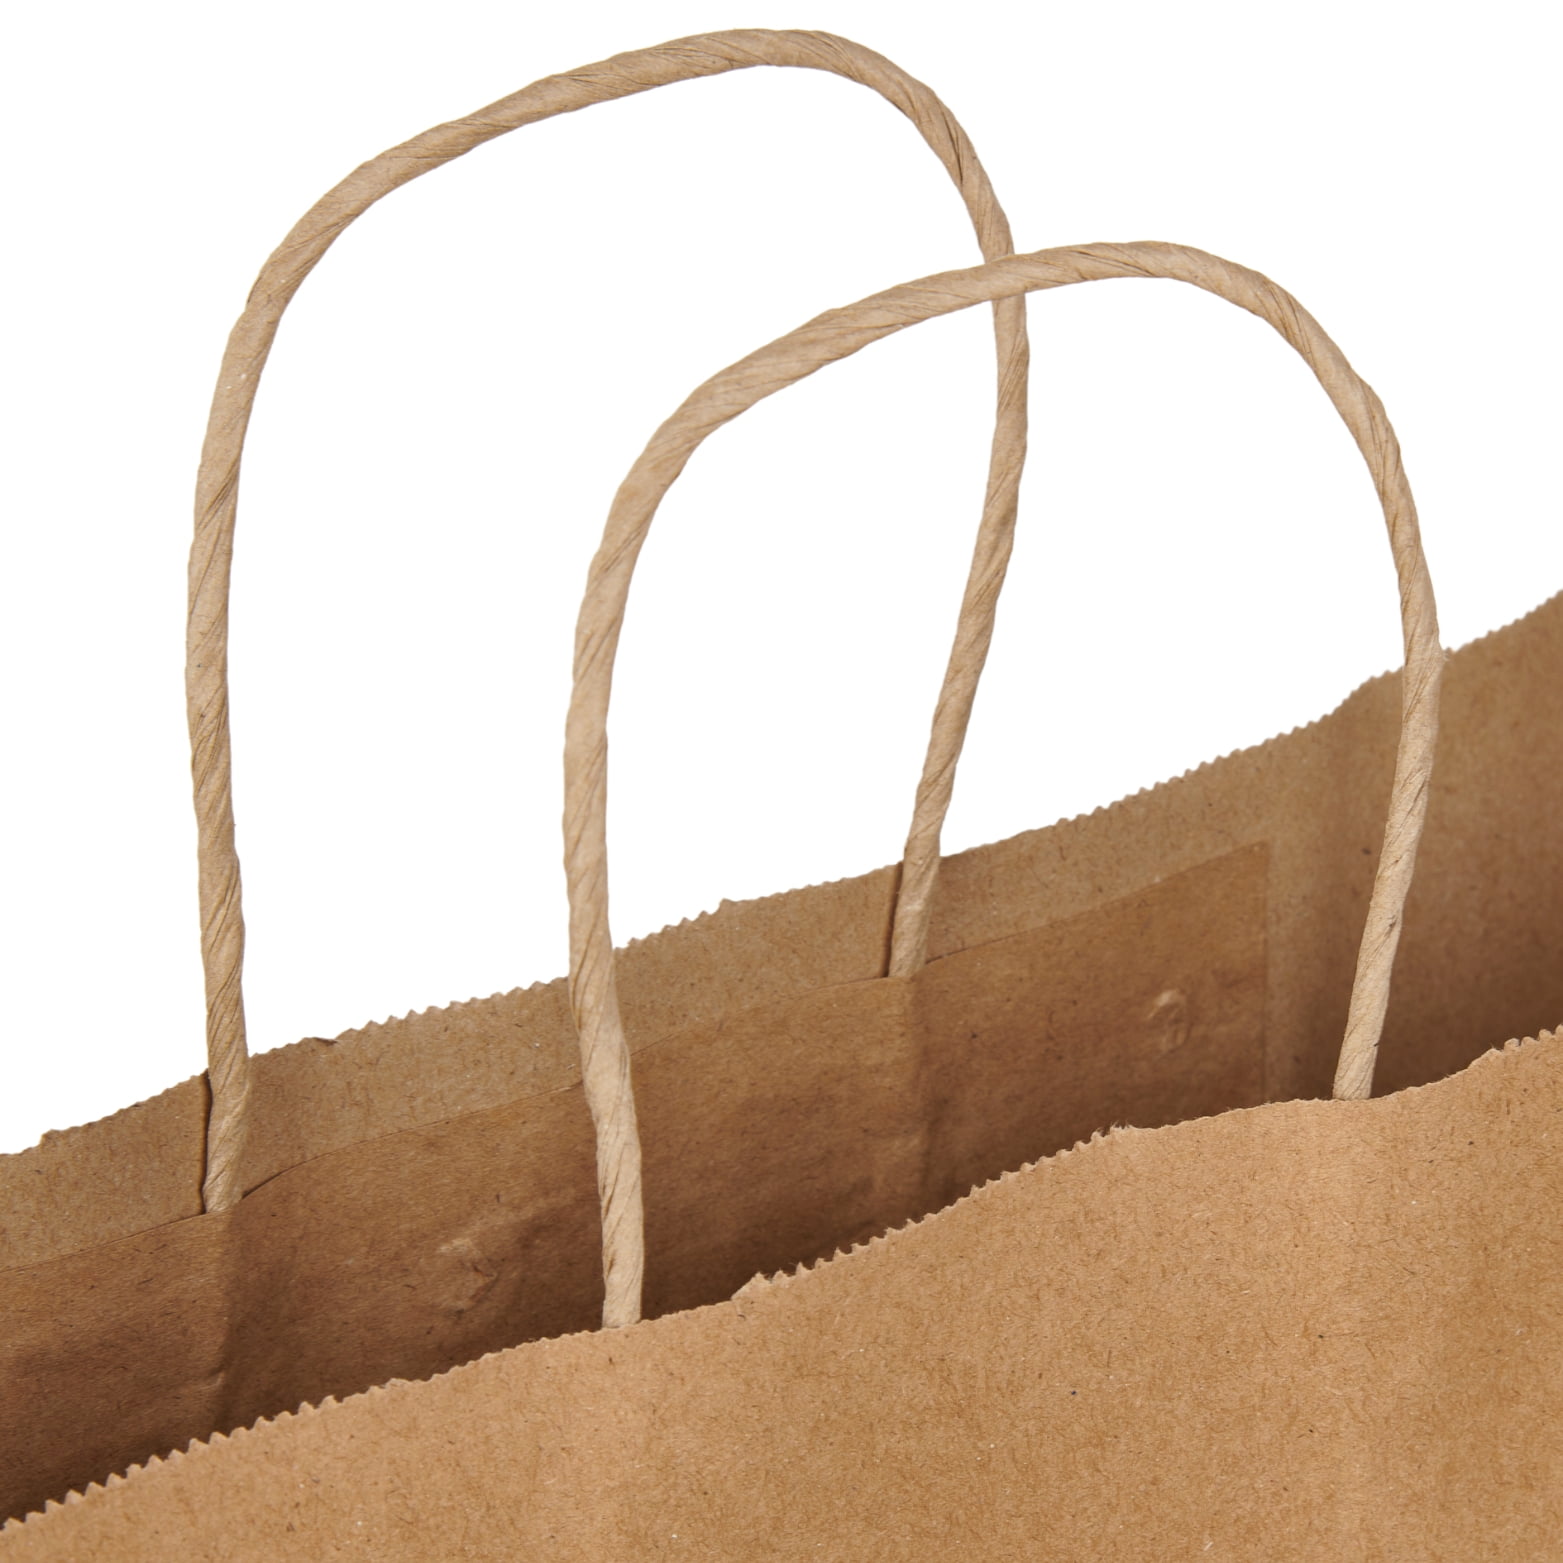 Jumbo Newsprint Paper Shopping Bags - 16”L x 6”D x 19”H - Case of 100